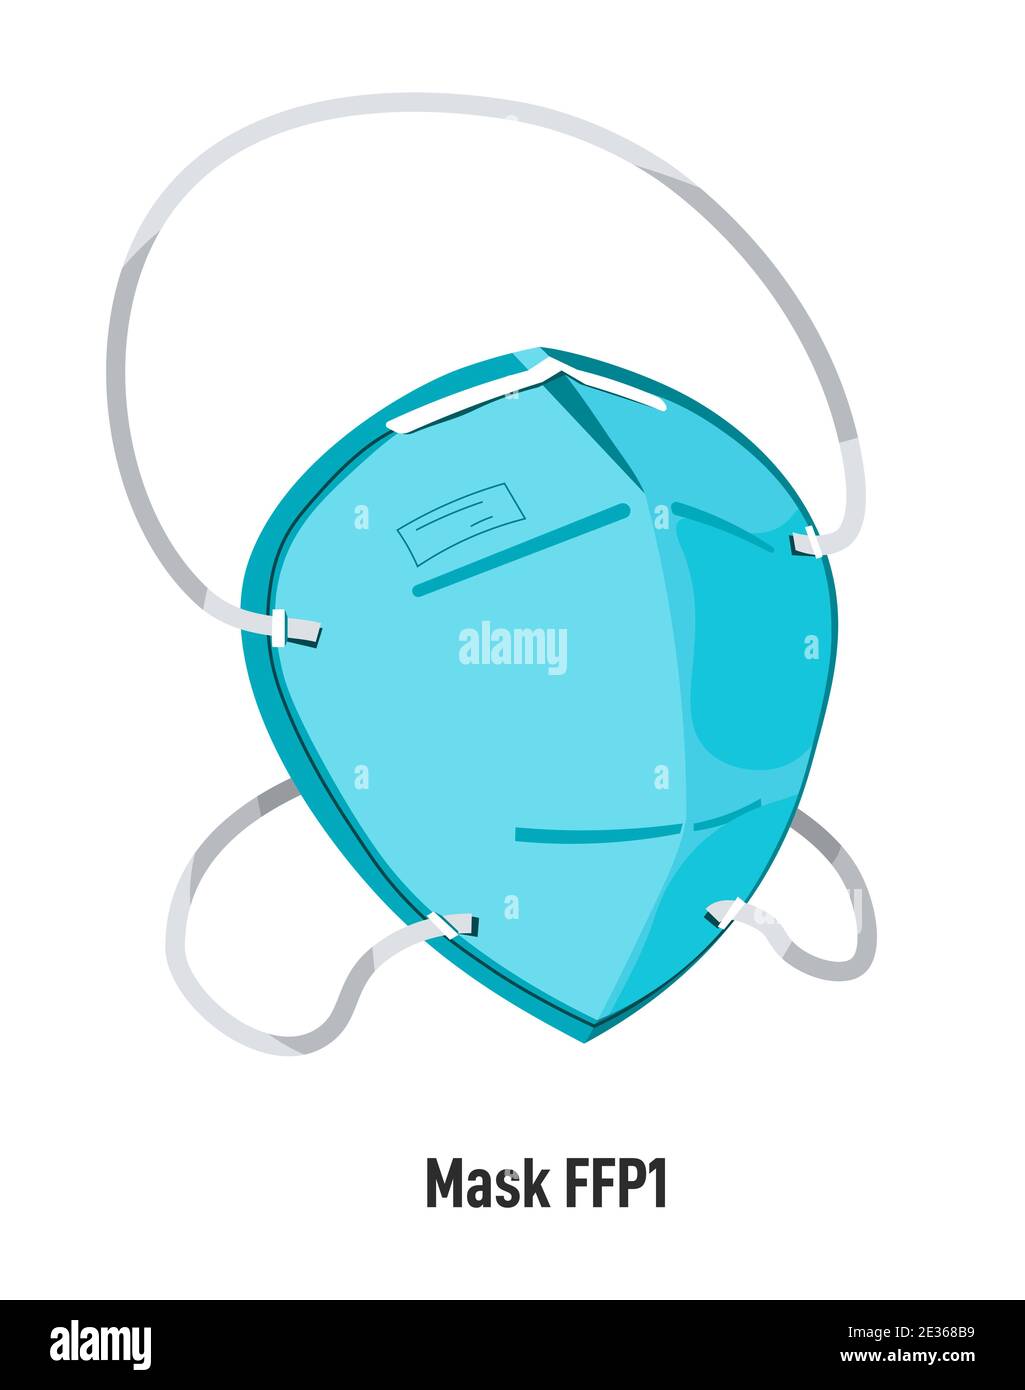 Gesichtsmaske FFP1, Gesundheit und Medizin Vektor Stock Vektor